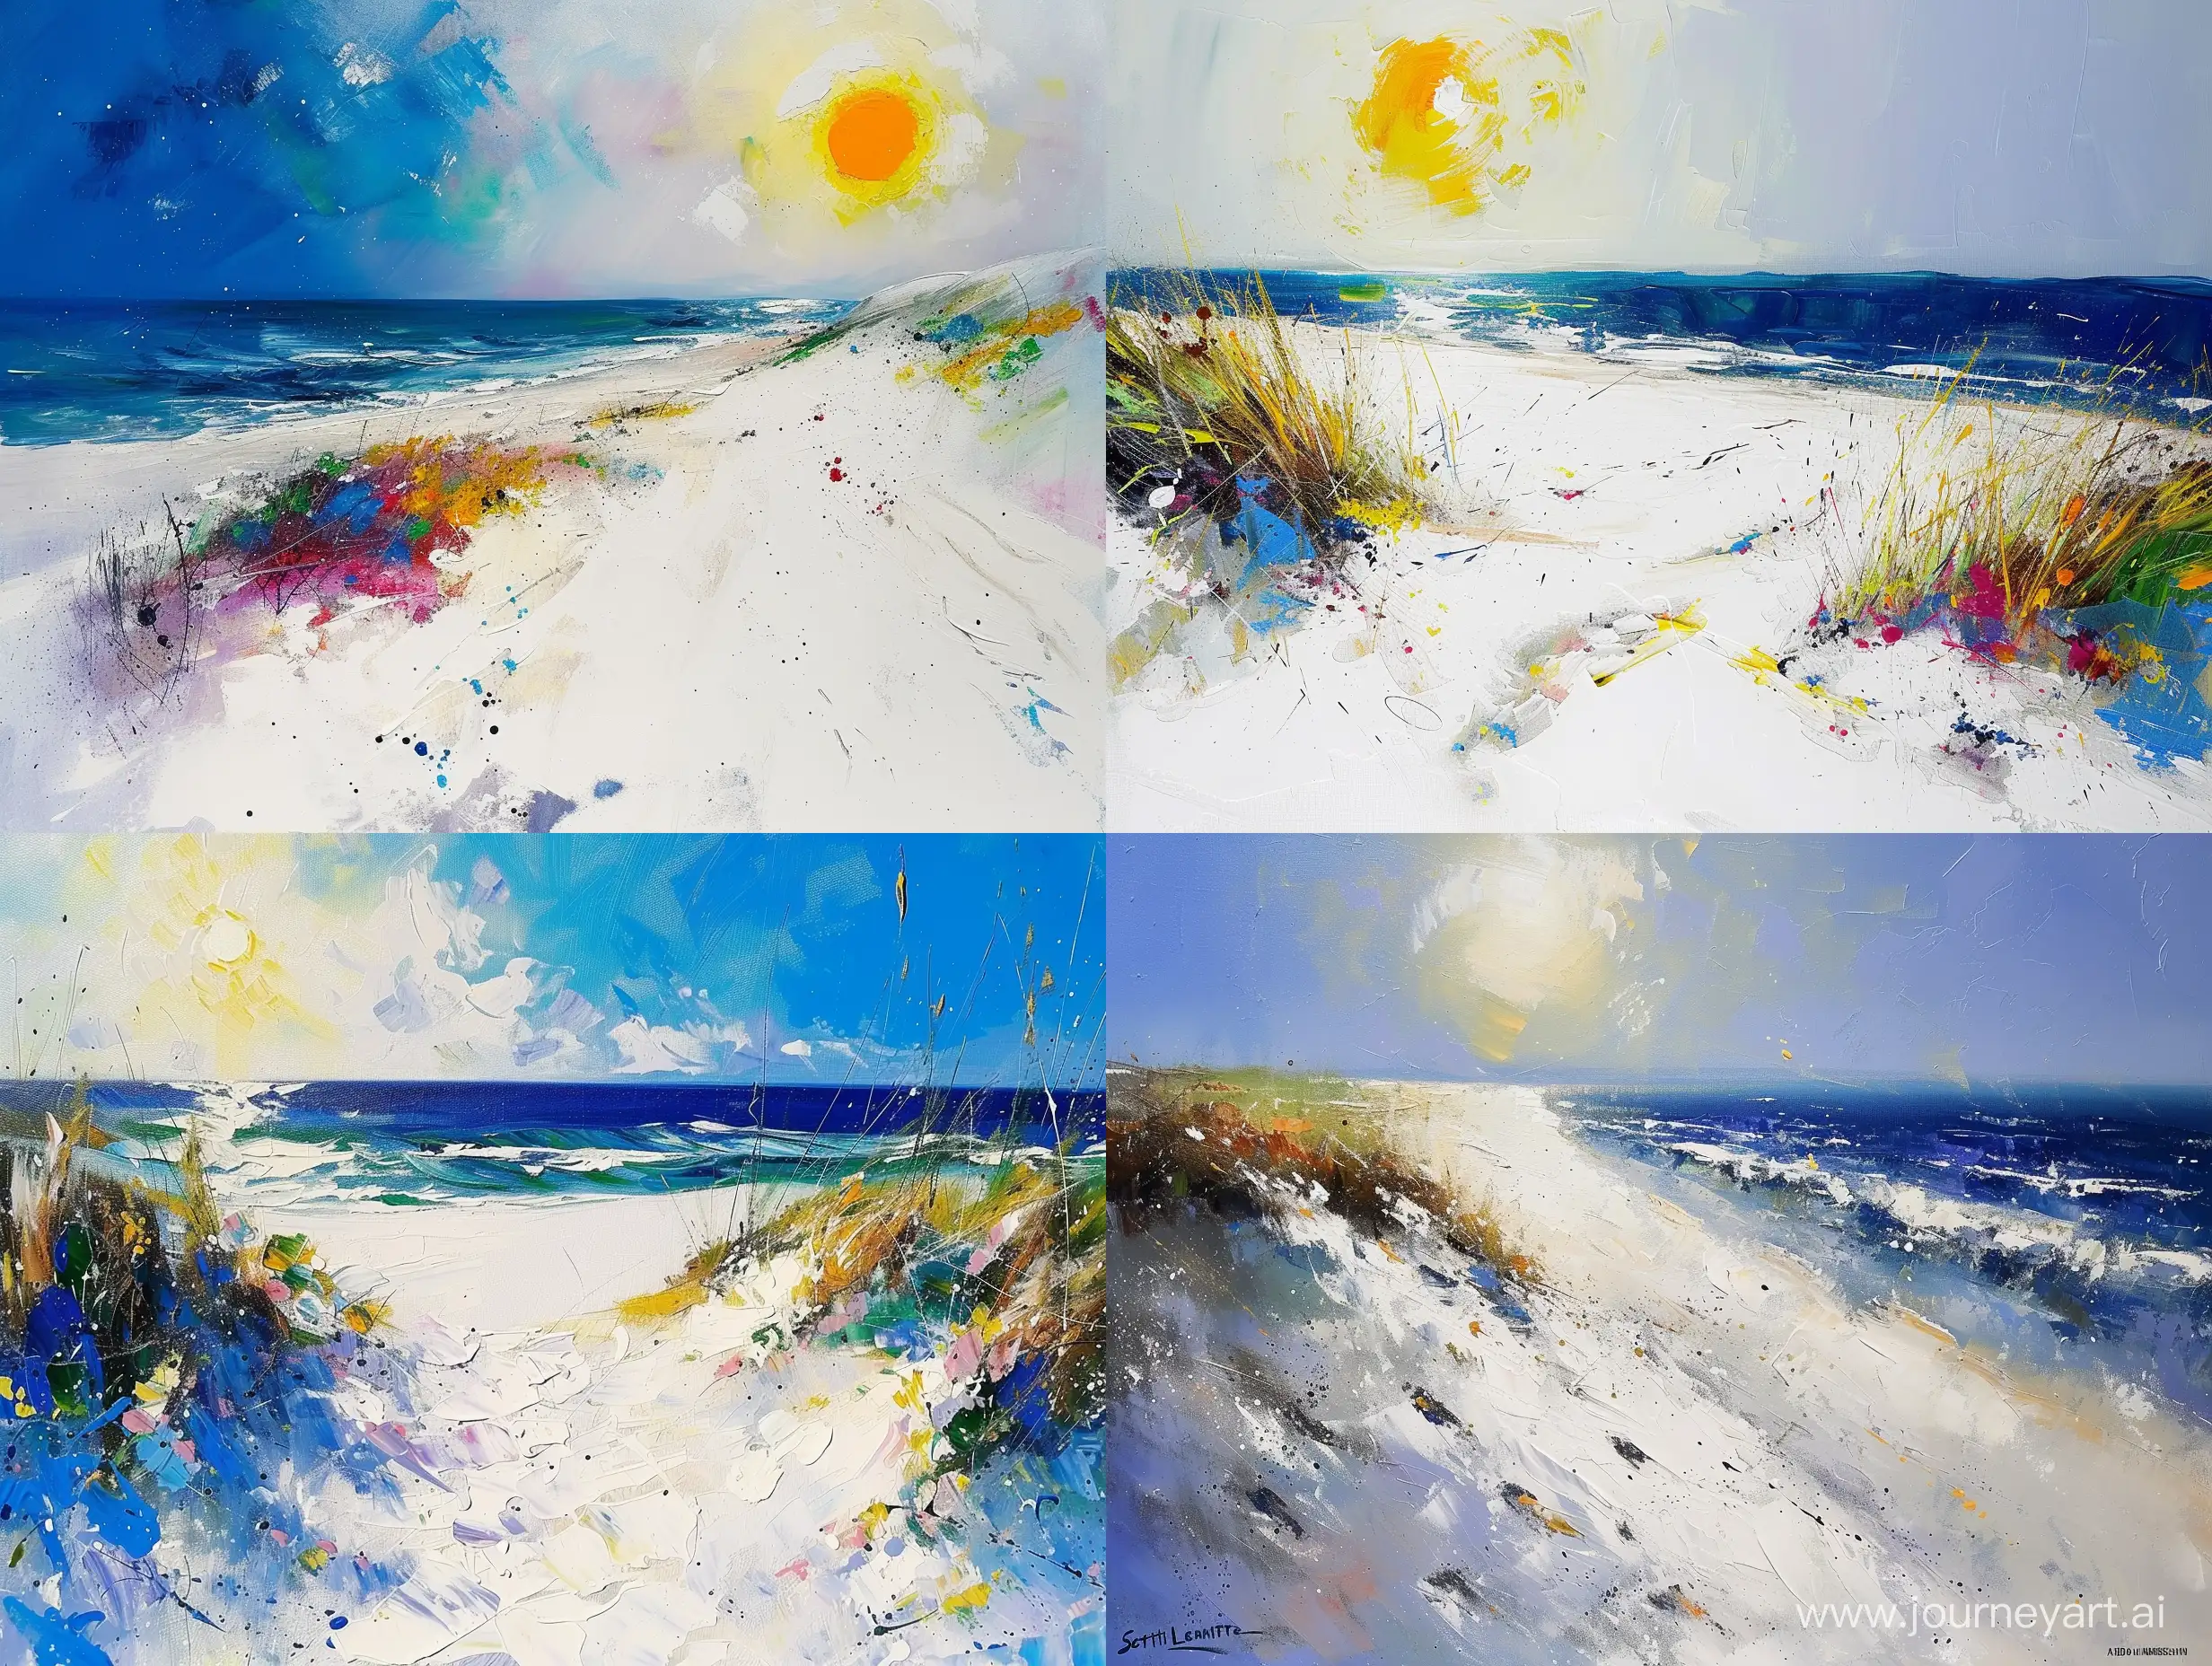 acrylic painting by Scott Naismith Pol Ledent John Lowrie Morrison Andrew Atroshenko, white sand beach and sun, all white, deep colors, chaotic dry brushing, splattering